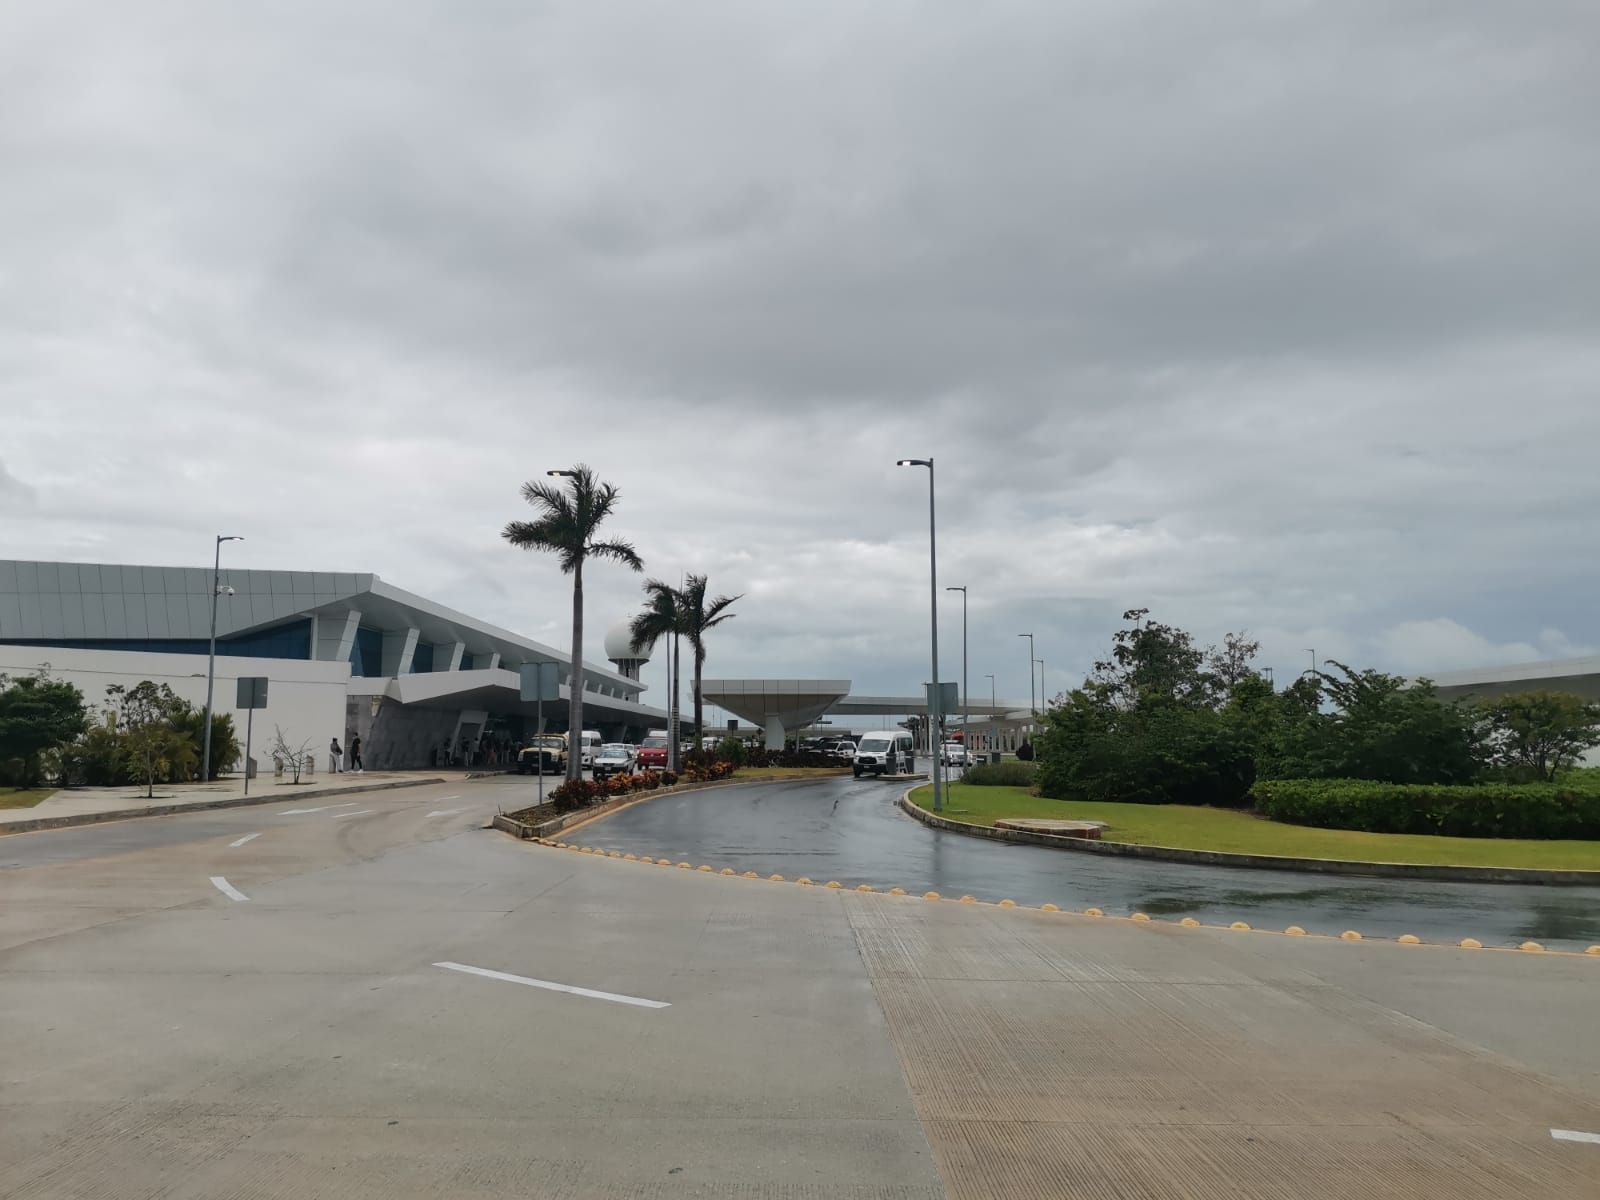 Sigue en vivo el tráfico aéreo del aeropuerto de Cancún previo a la Onda Tropical 1